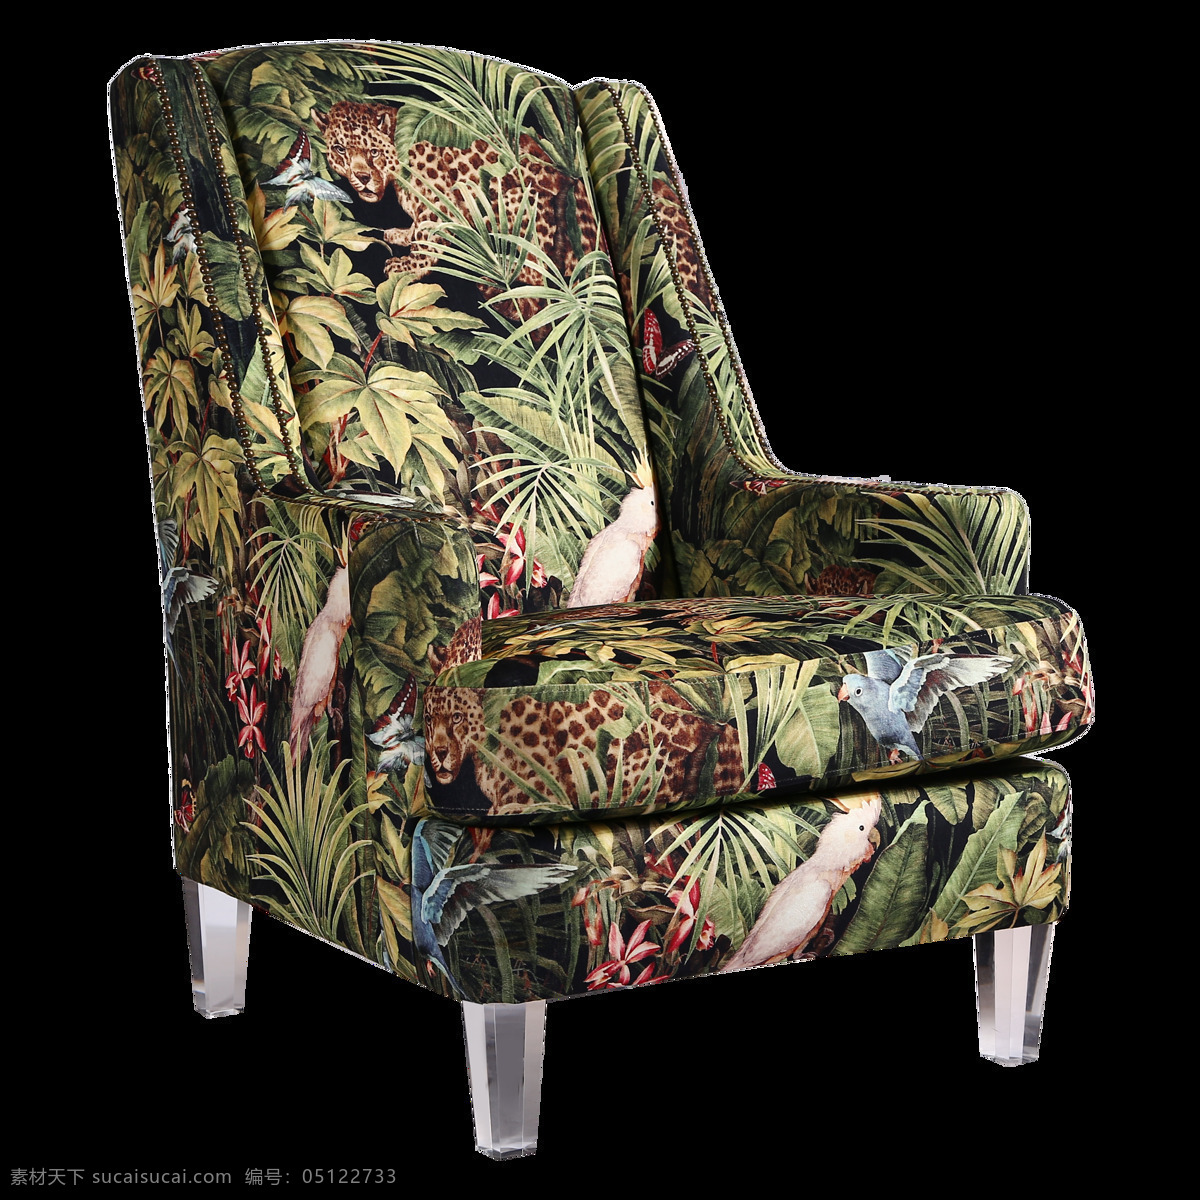 椅 椅子 高级 定制 亚 克利 丛林 动物 休闲椅 沙发 高级定制 简约 北欧 哥特 自然 地中海 现代 新中式 家具 家居